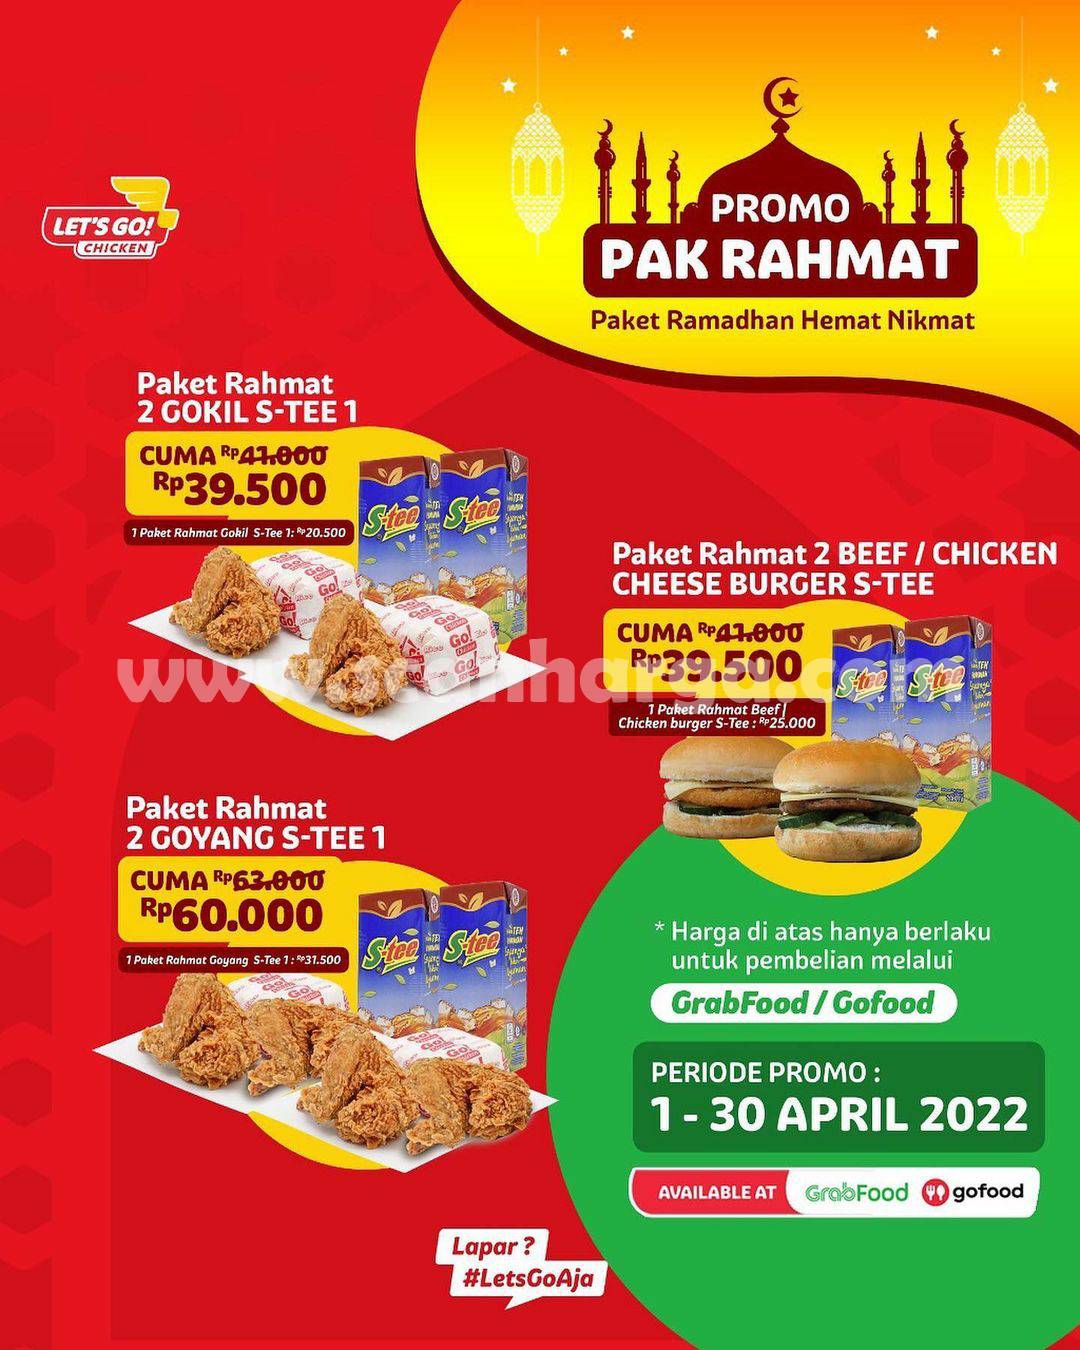 Promo LET’S GO CHICKEN! Paket Ramadhan Hemat Harga mulai Rp 26.500